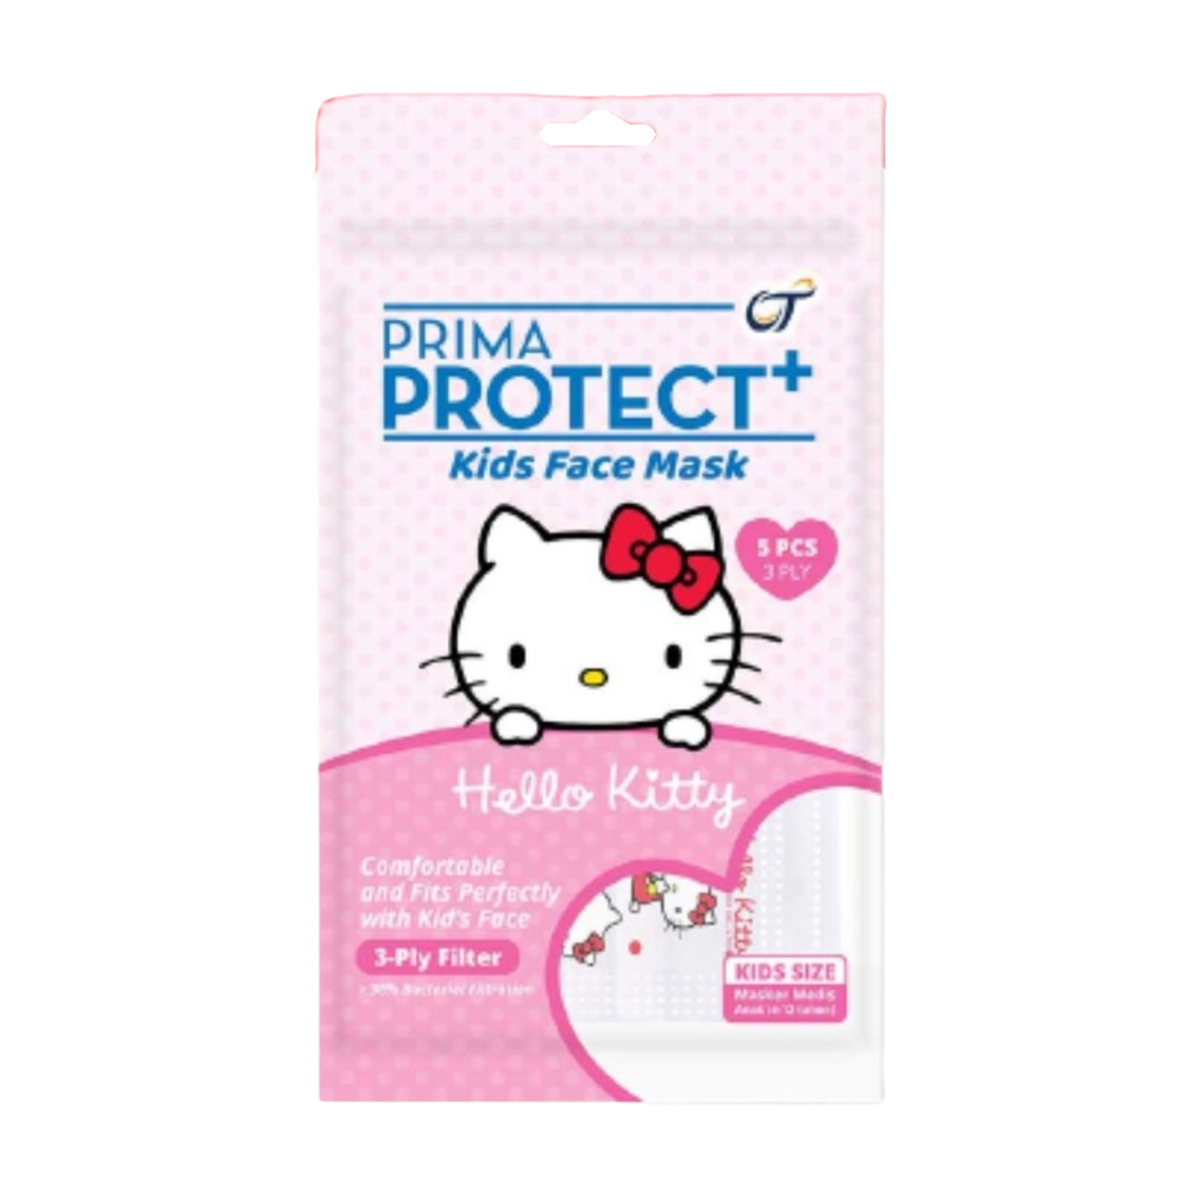 Prima Mask Protect + Kids 5pcs